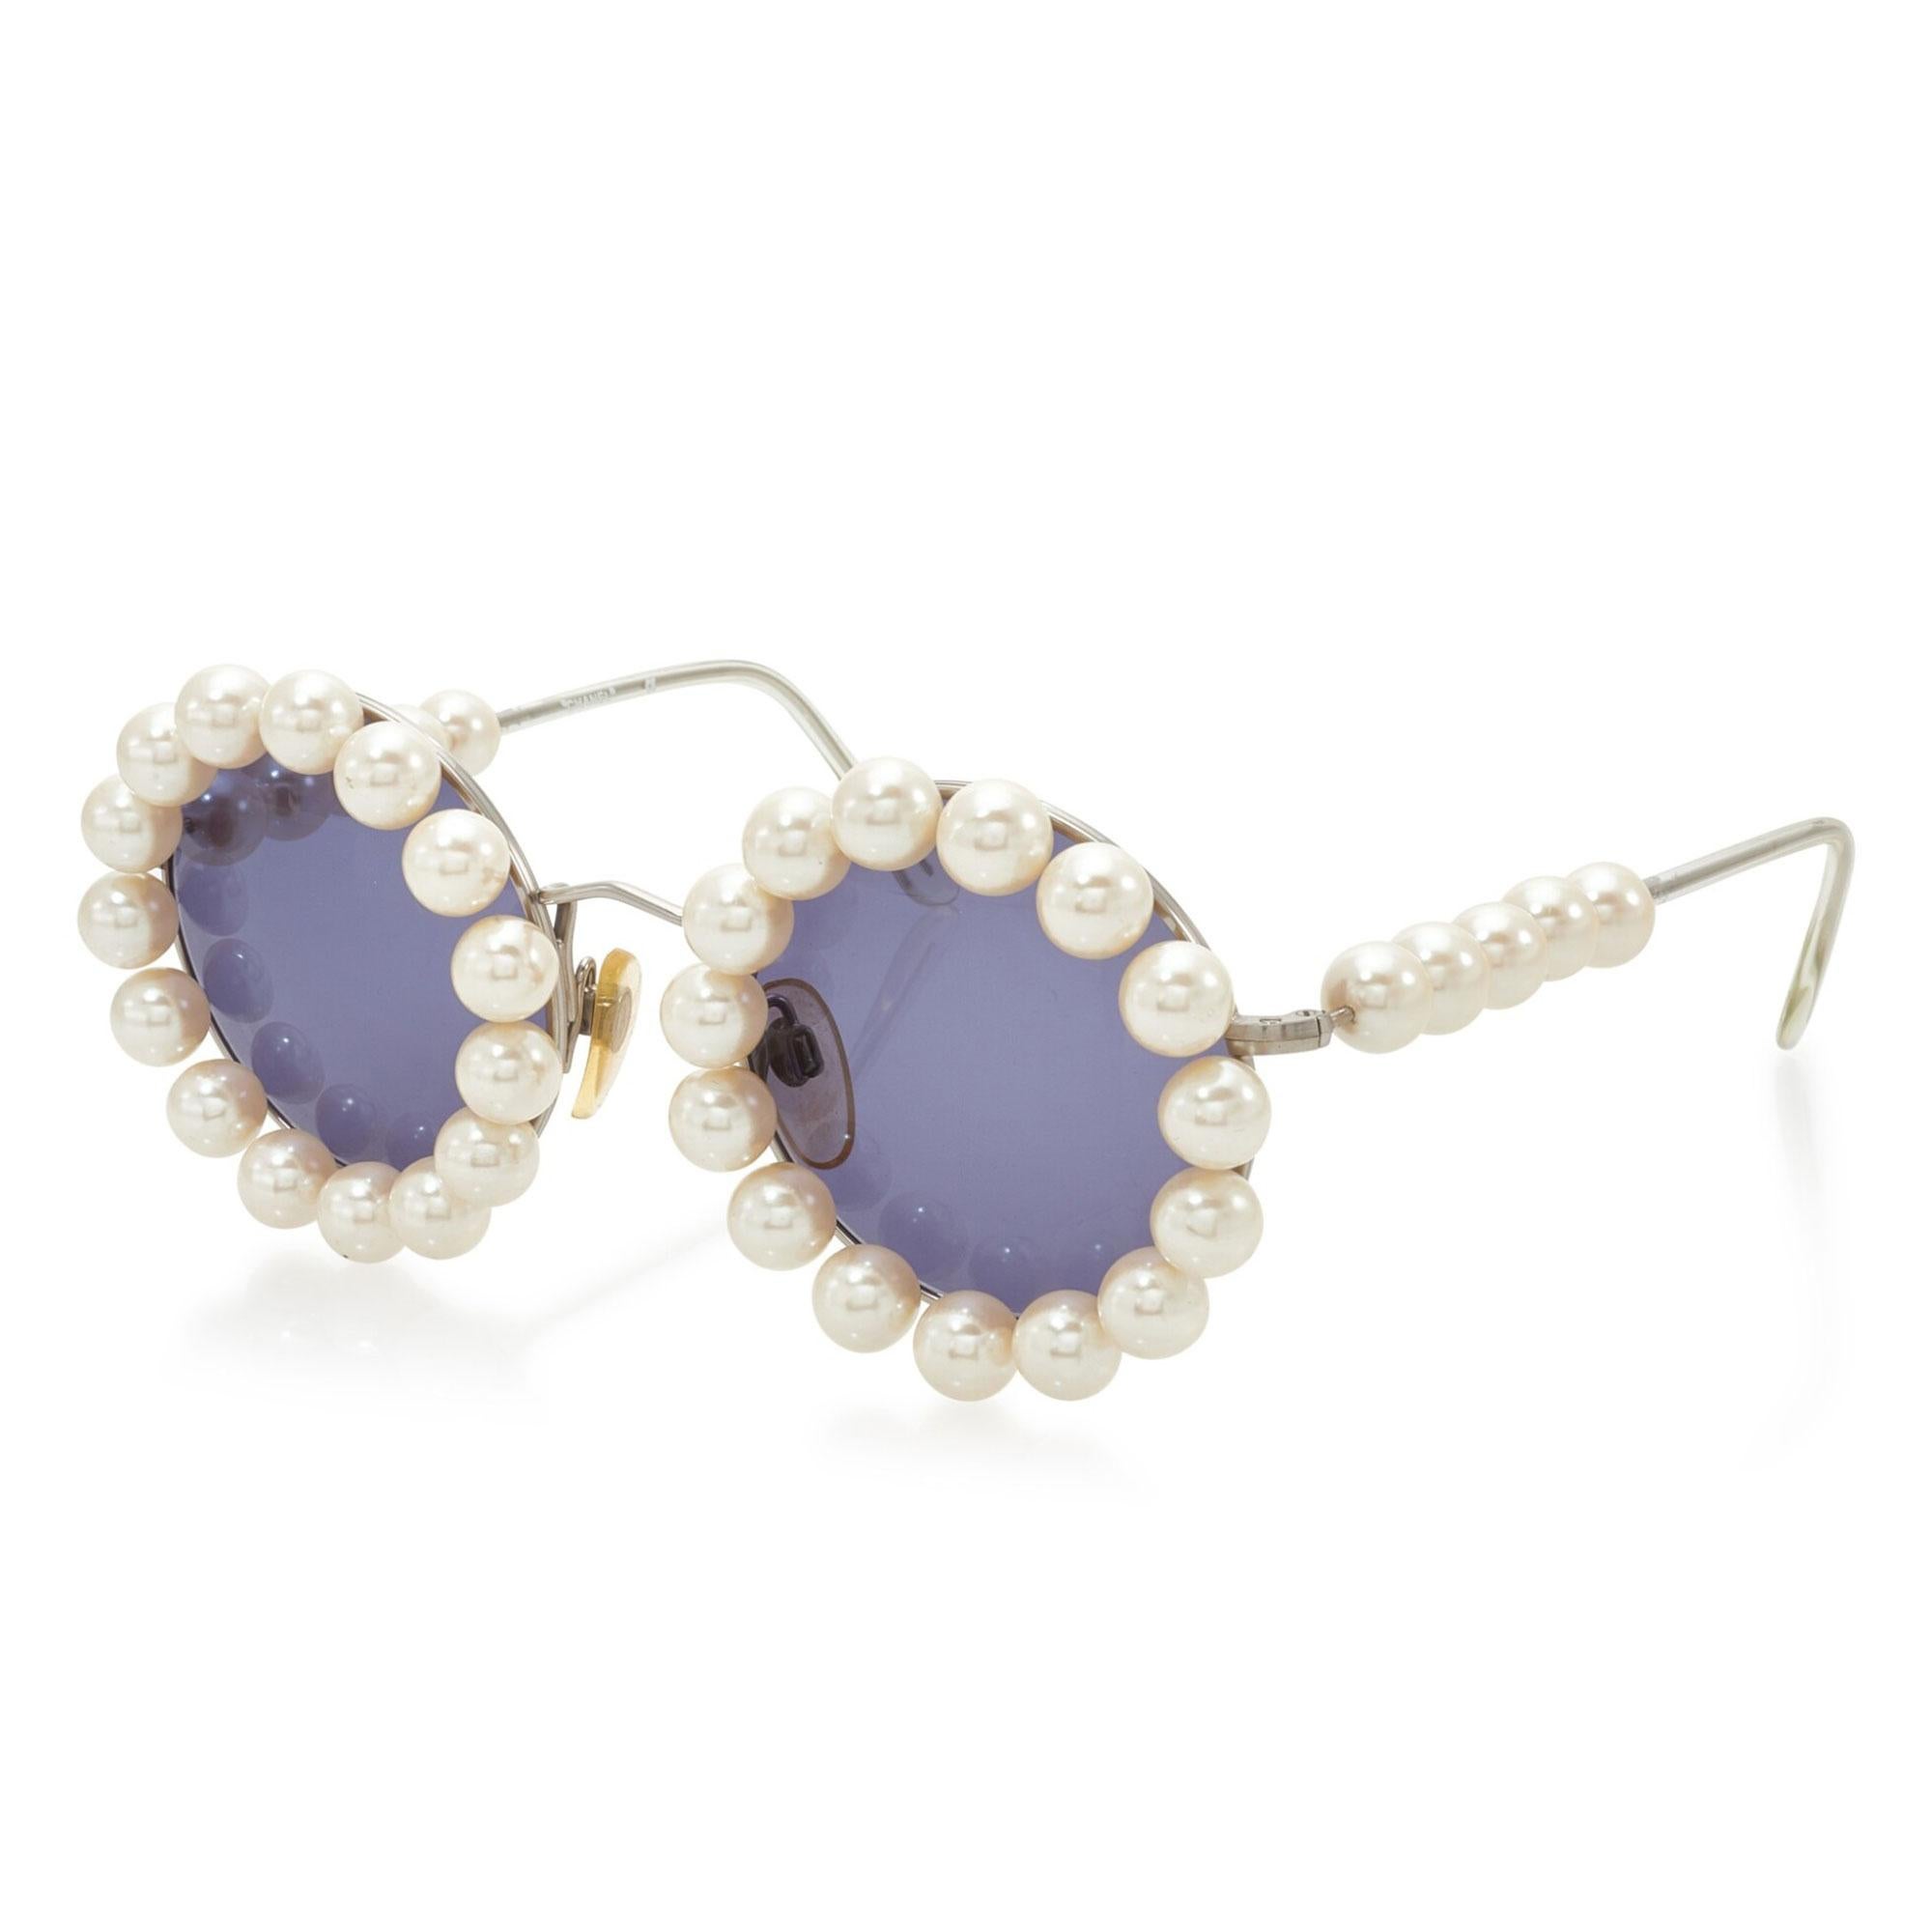 Chanel 1994 Frühjahr Laufsteg Vintage Perlen Runde Sonnenbrille Selten

Runde Chanel Vintage-Sonnenbrille aus silberfarbenem Metall mit Kunstperlenbesatz an Rahmen und Bügeln, verstellbaren nose pads und getönten Gläsern.

Aus der Collection'S